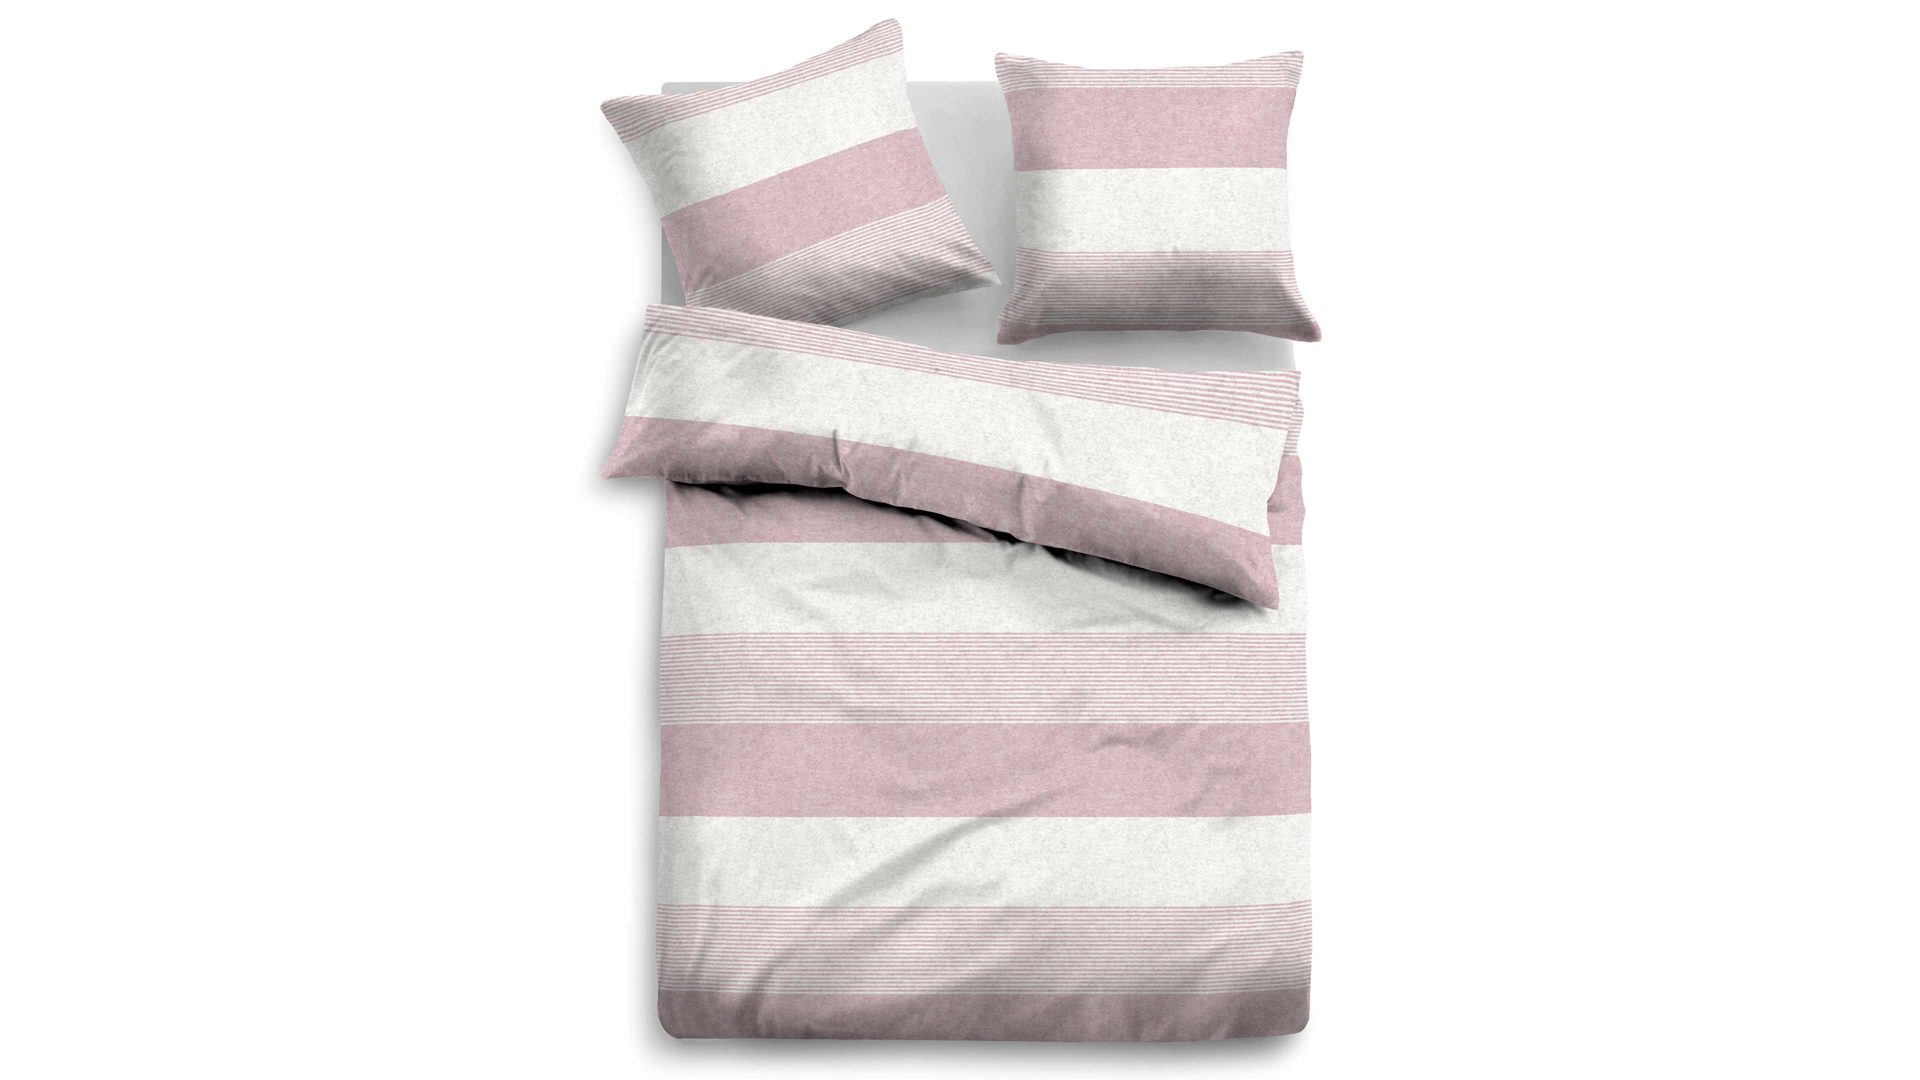 Bettwäsche-Set Biberna aus Stoff in Pastellfarben TOM TAILOR Flanell-Bettwäsche Streifen Quer rosefarbene & graue Streifen – ca. 155 x 220 cm